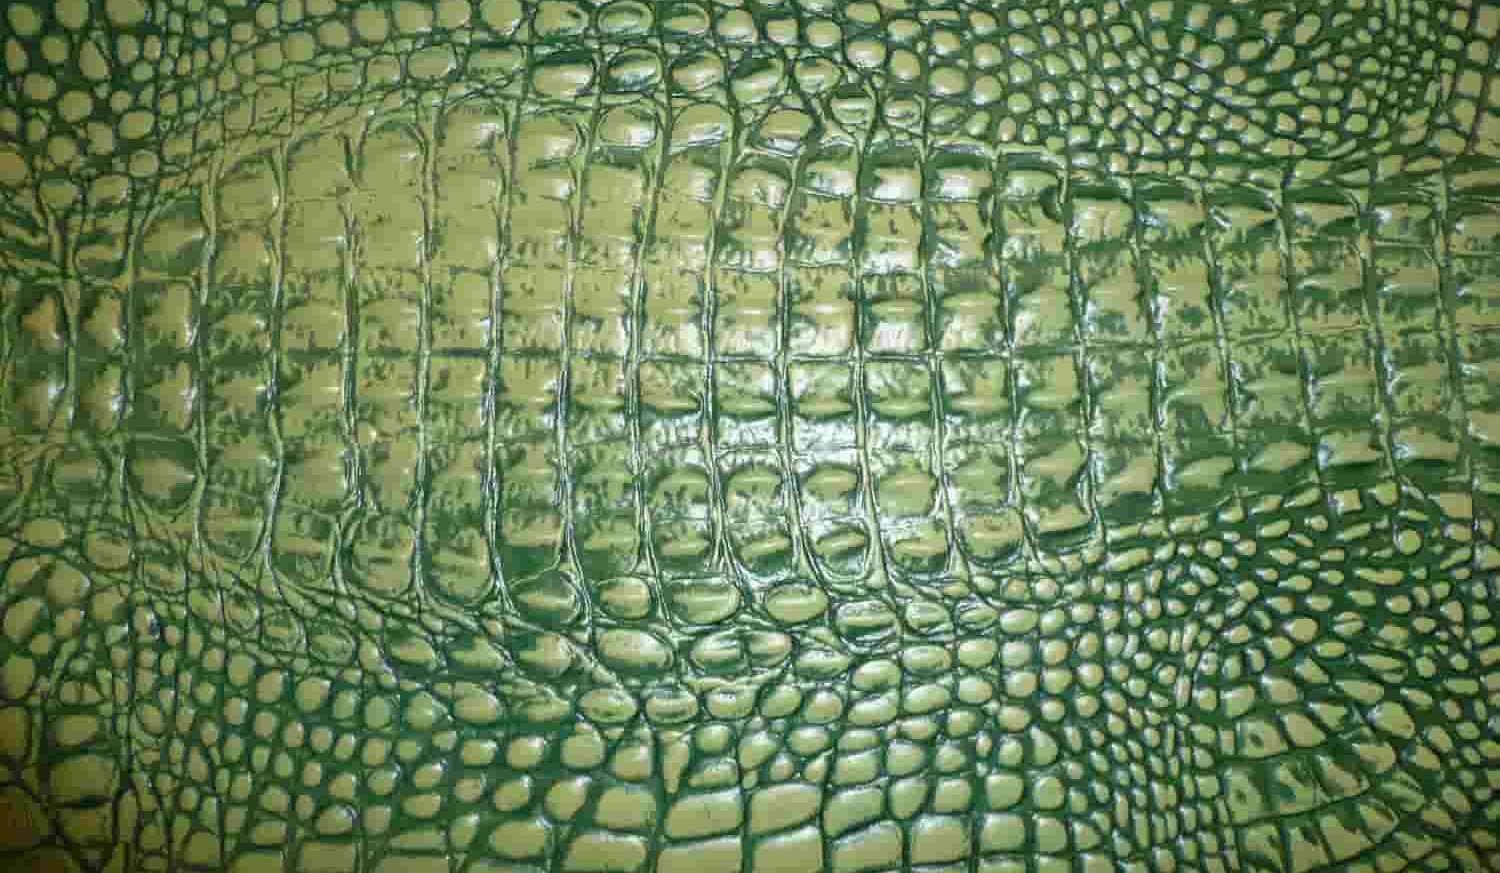  جلد التمساح + ماذا نصنع و فوائد 